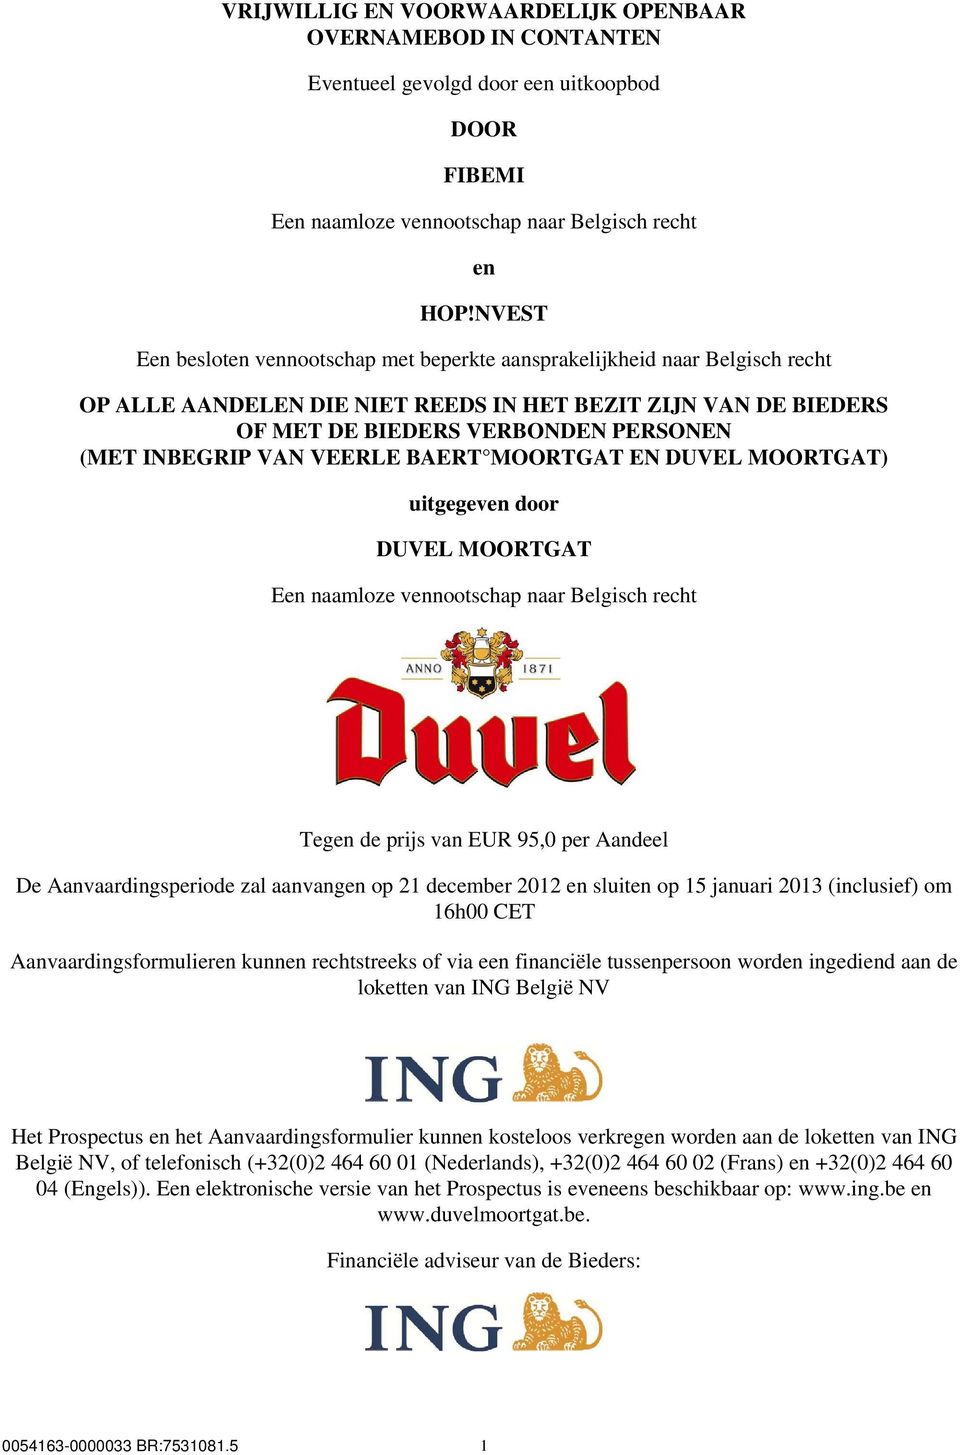 VAN VEERLE BAERT MOORTGAT EN DUVEL MOORTGAT) uitgegeven door DUVEL MOORTGAT Een naamloze vennootschap naar Belgisch recht Tegen de prijs van EUR 95,0 per Aandeel De Aanvaardingsperiode zal aanvangen